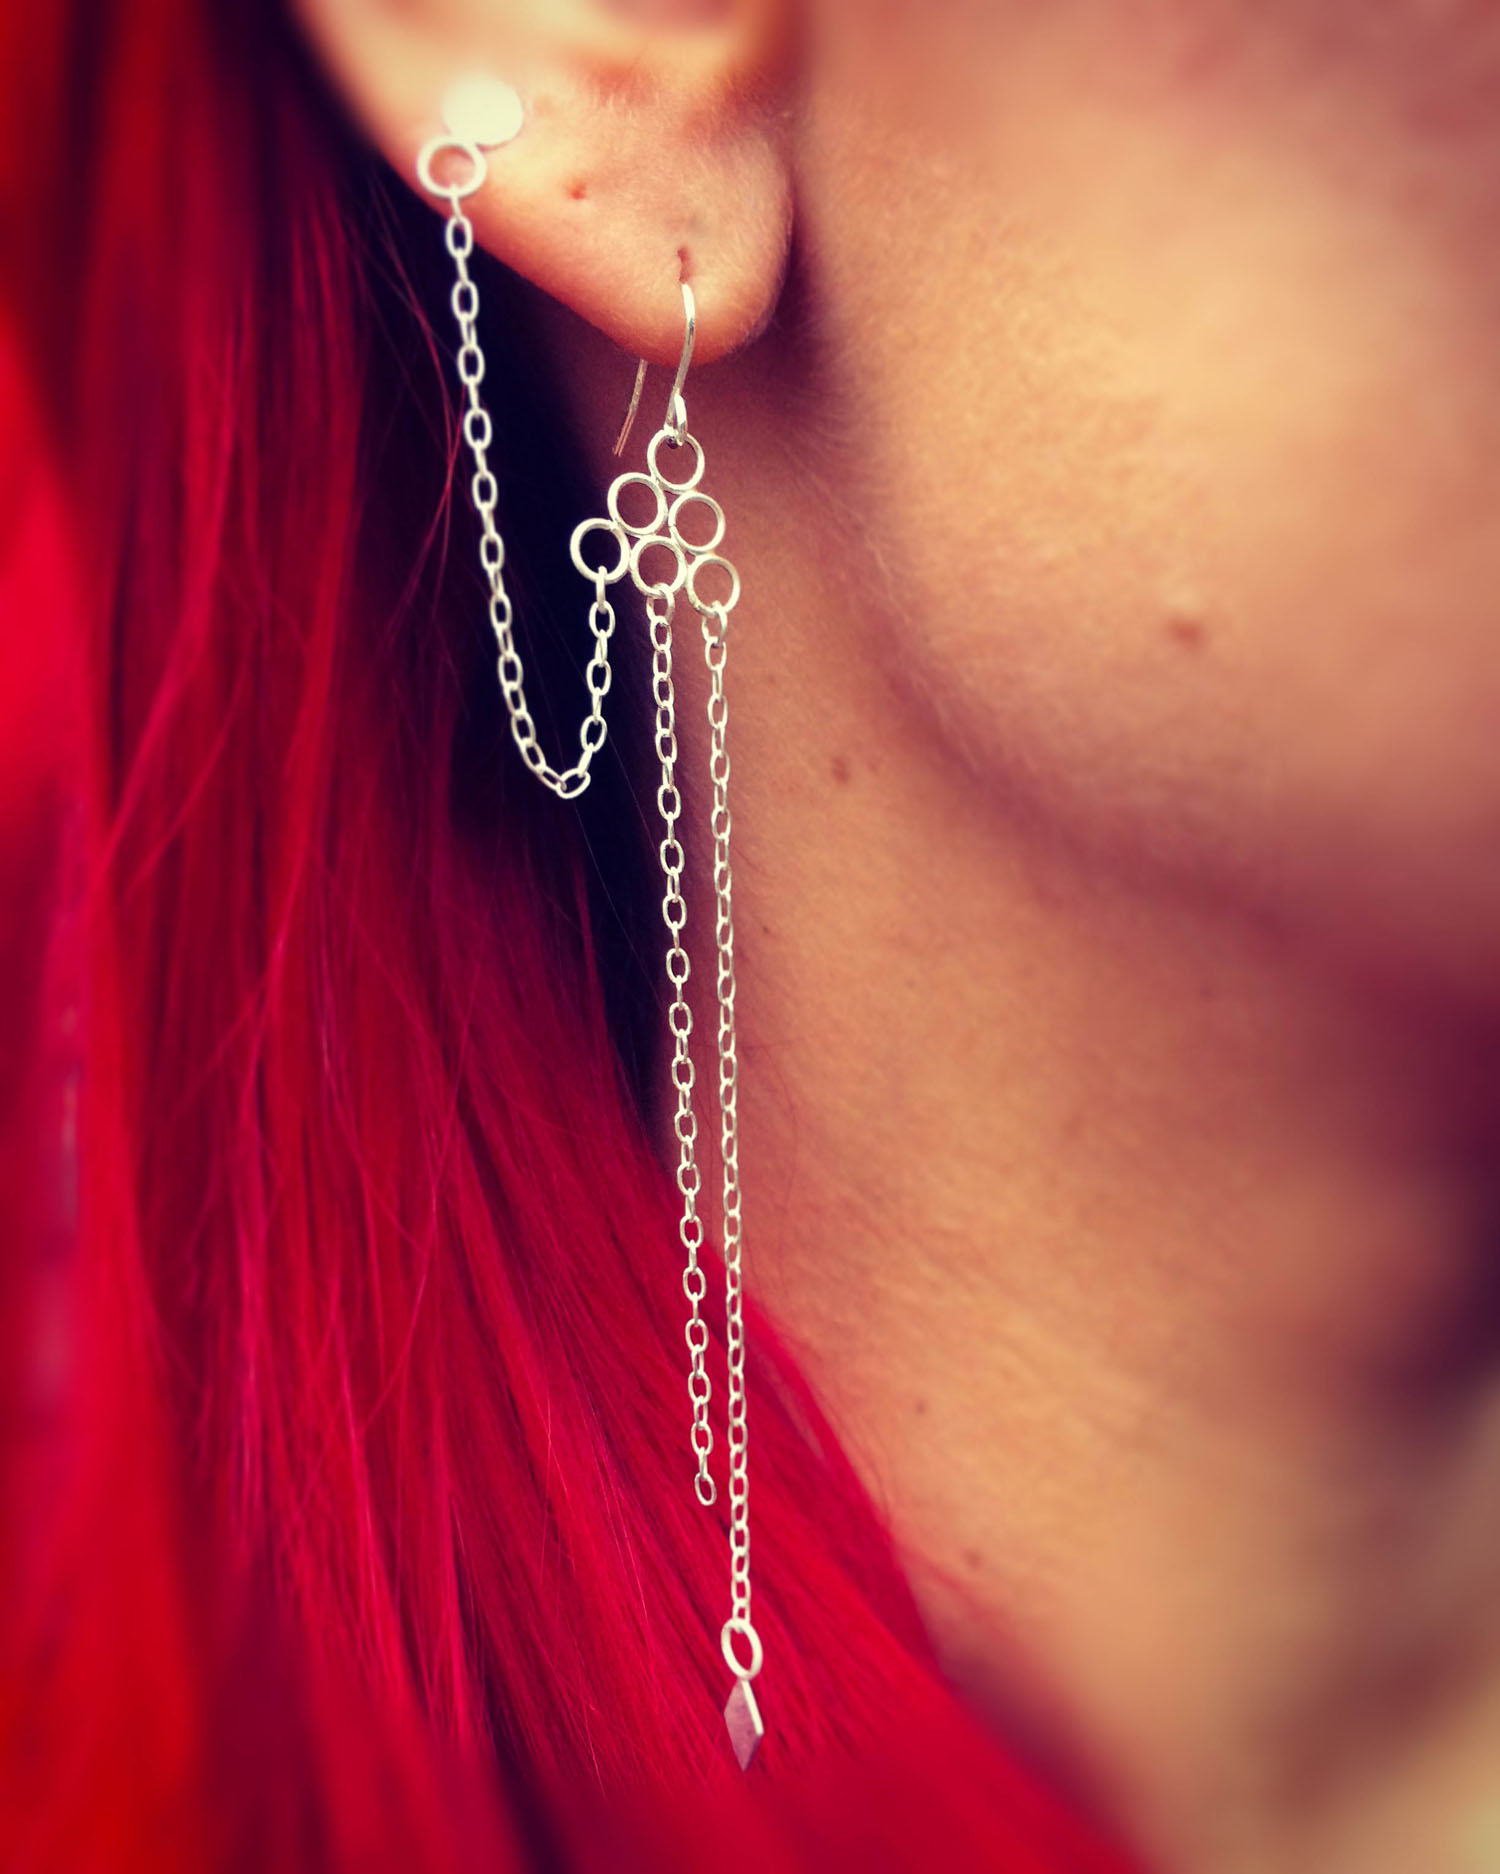 silver-chain-earrings-shannara-chronicles.jpg